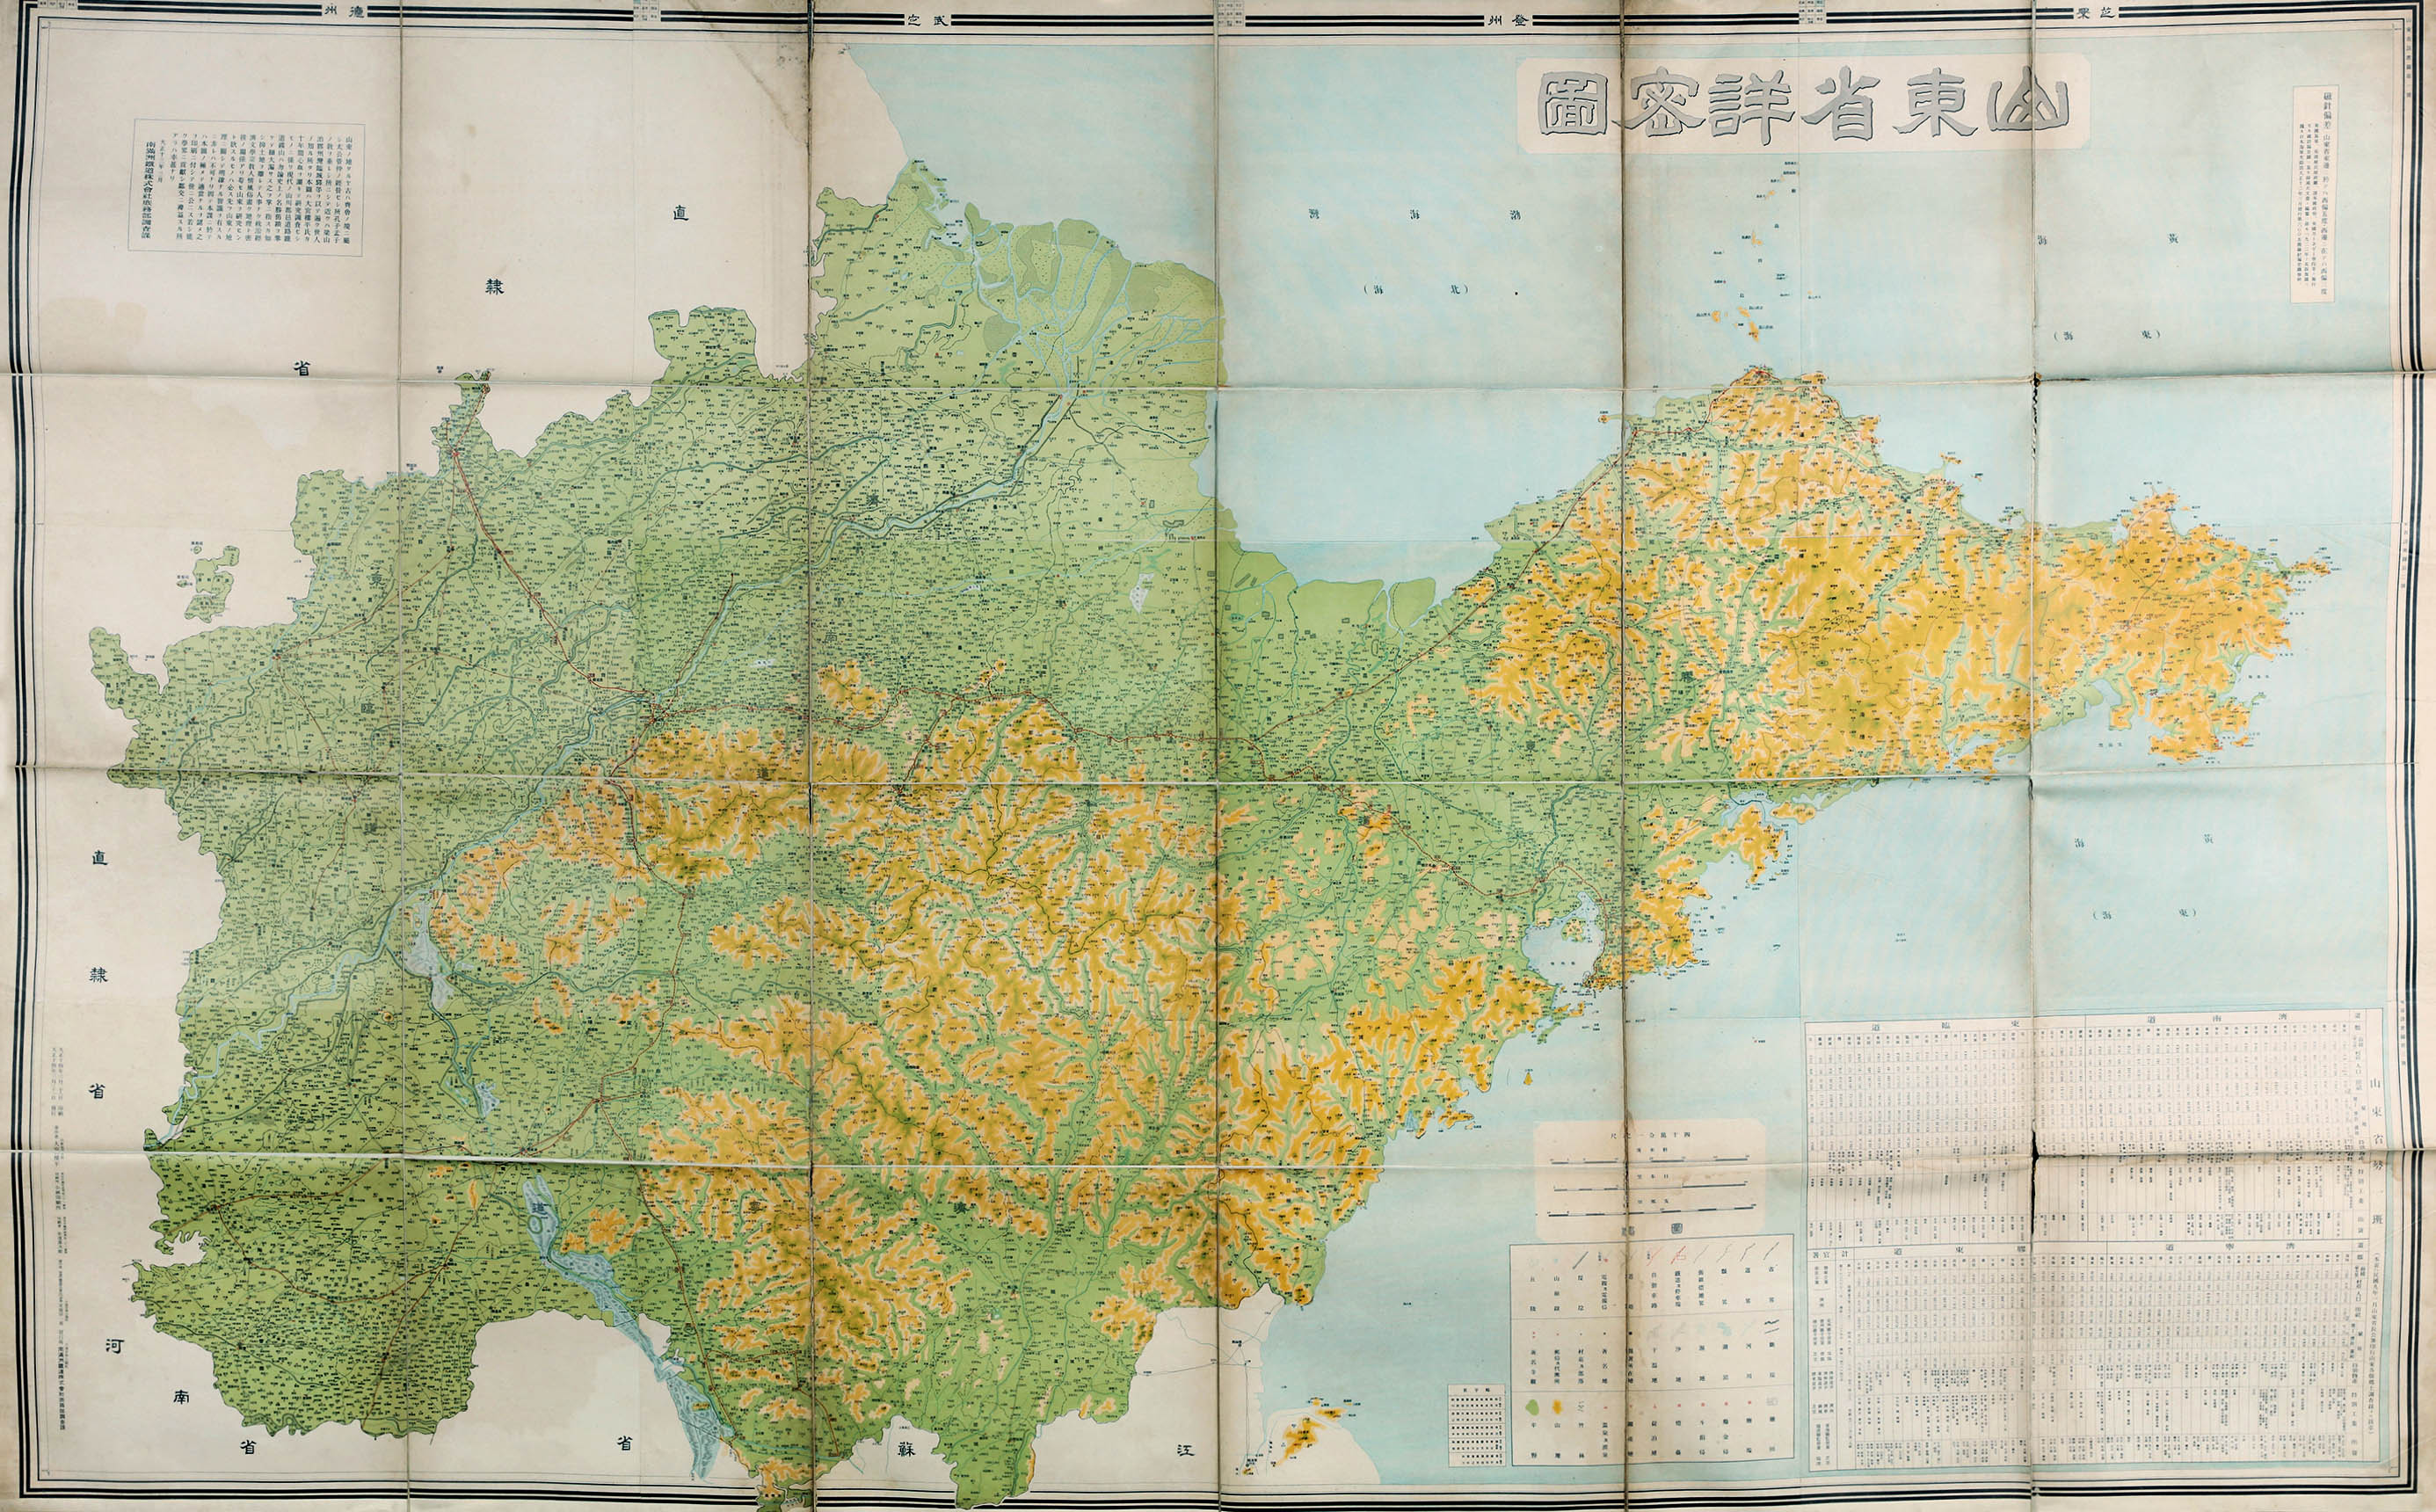 1张日本大正四年(1915年)印提要:此图绘制的年代为民国时期的山东∈ 